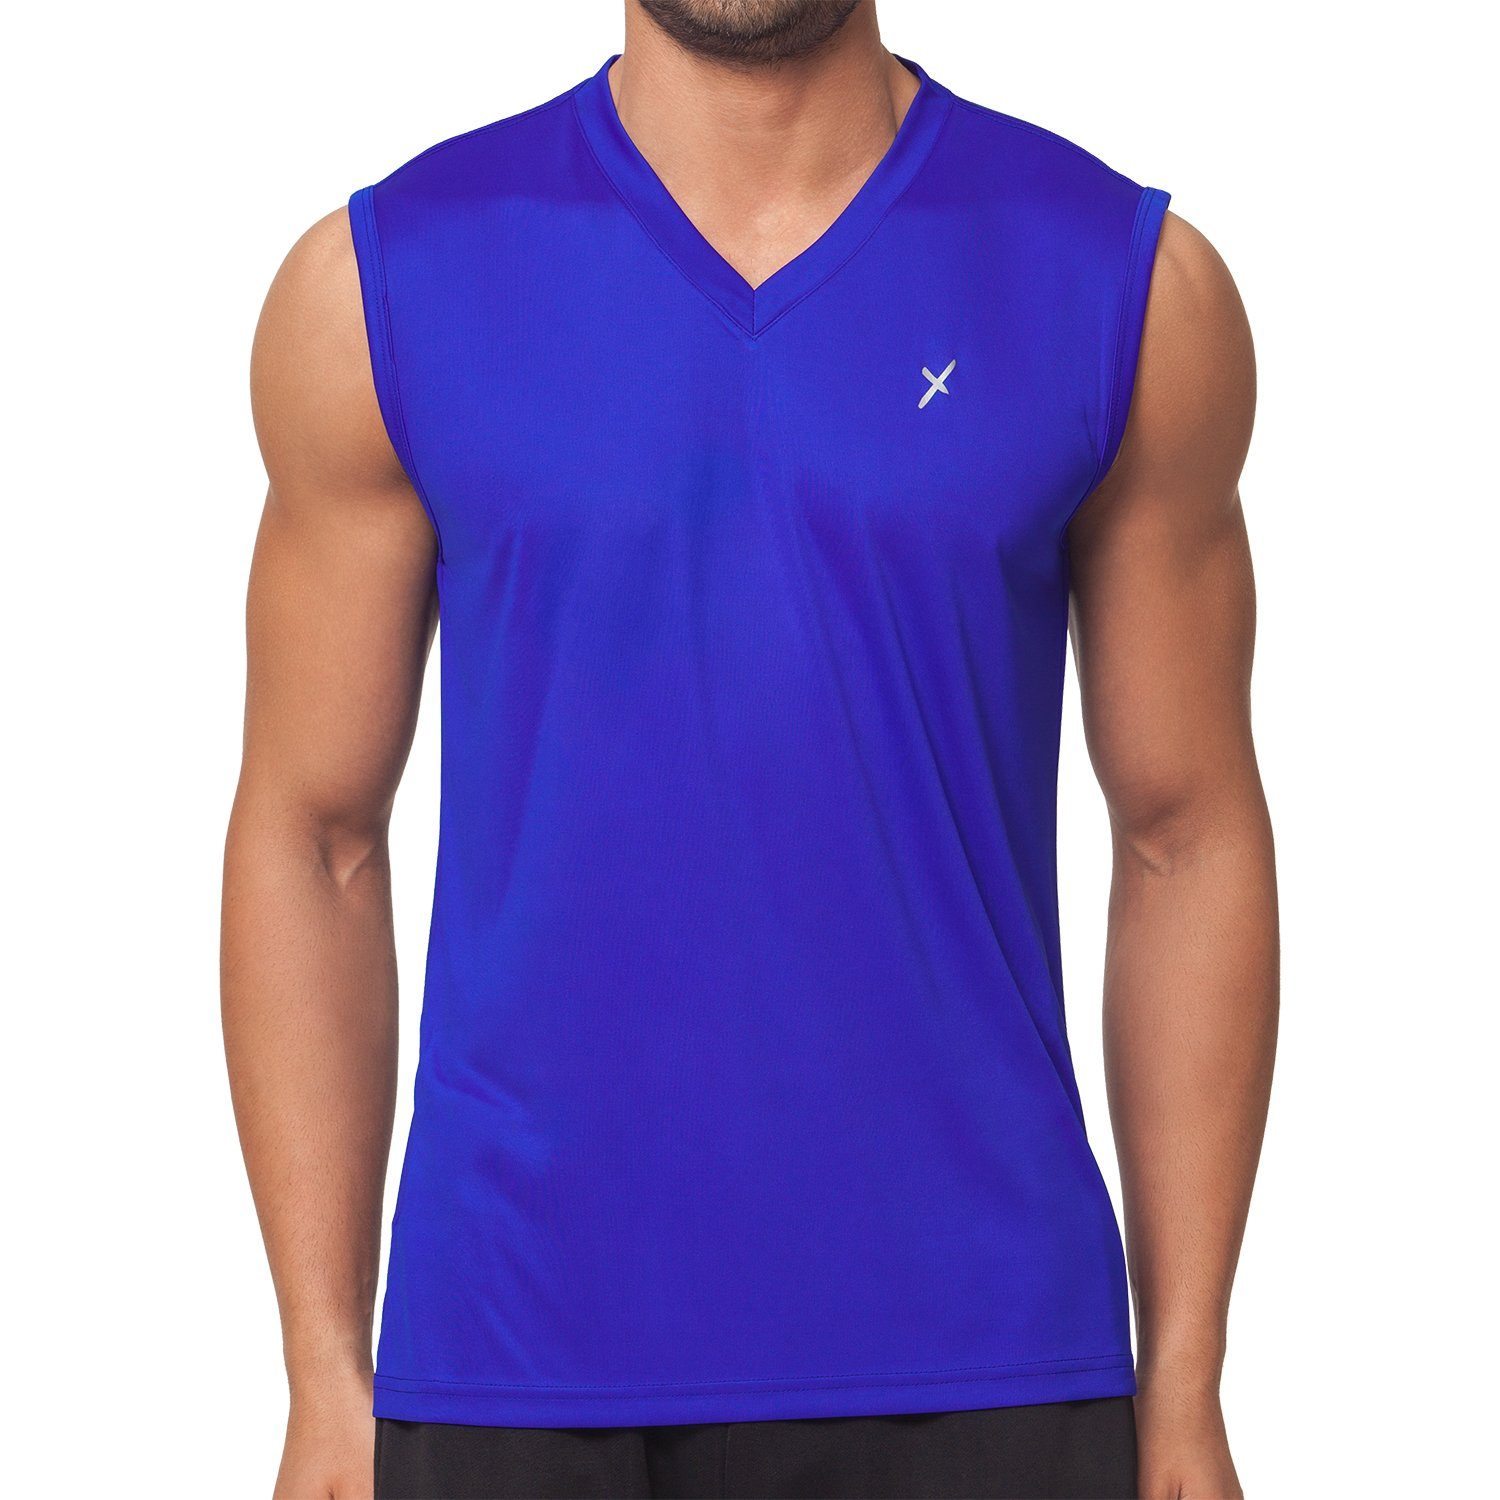 CFLEX Trainingsshirt Herren Sport Shirt Muscle-Shirt Fitness Collection Royalblau Sportswear